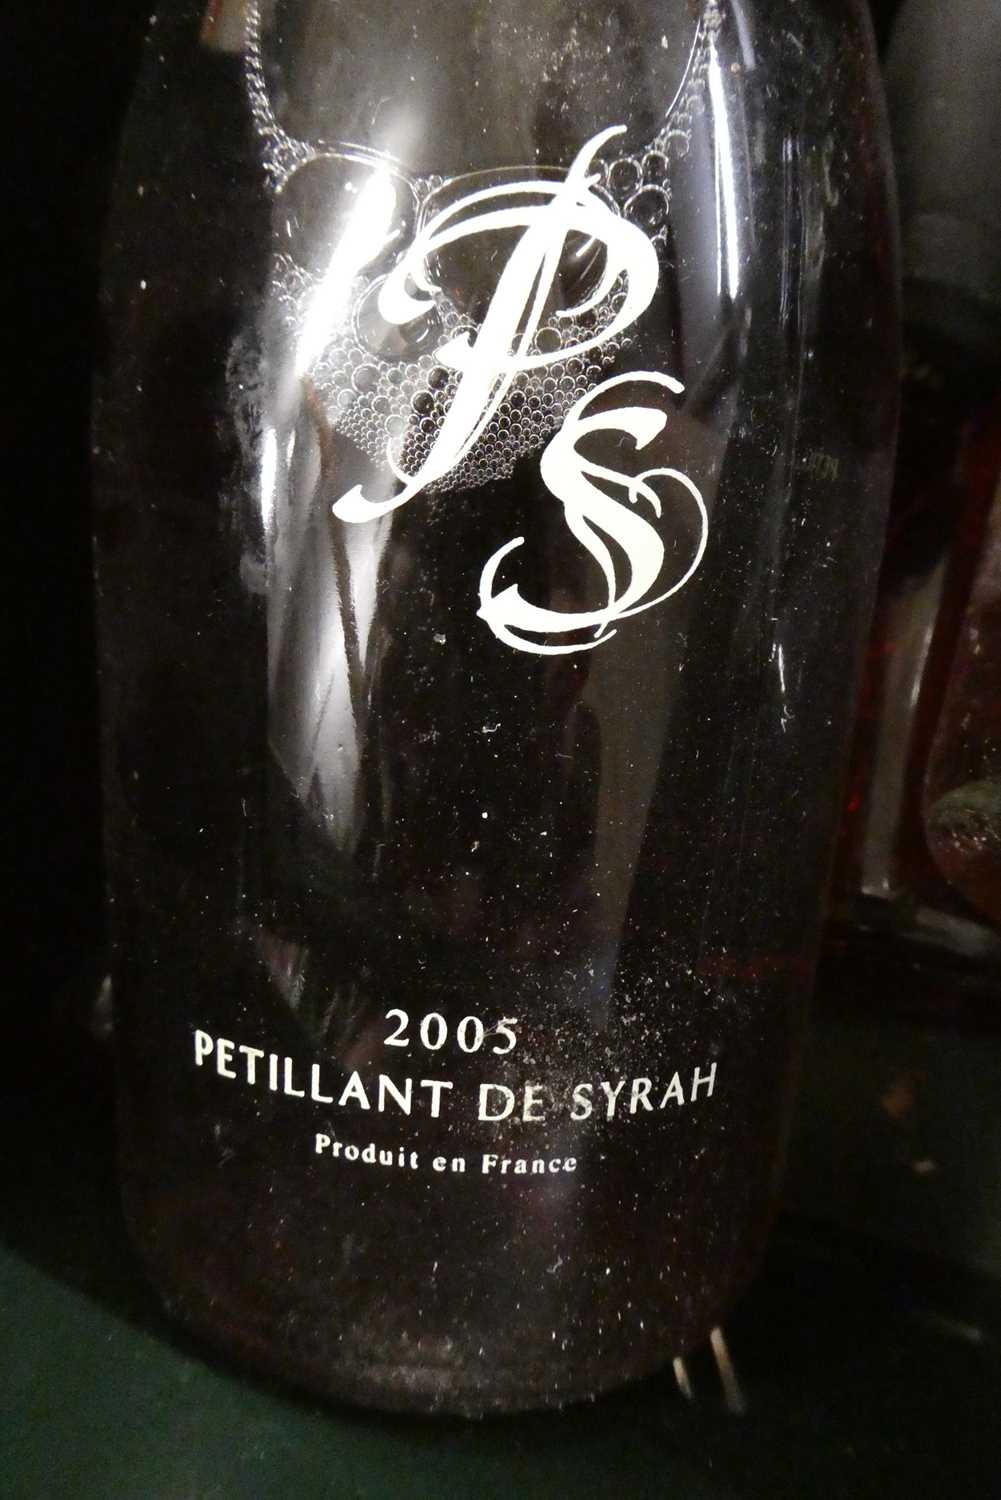 8 bottles Petillant de Syrah PS rose, 4 2005 & 4 2006 (Est. plus 24% premium inc. VAT) Condition - Image 2 of 2